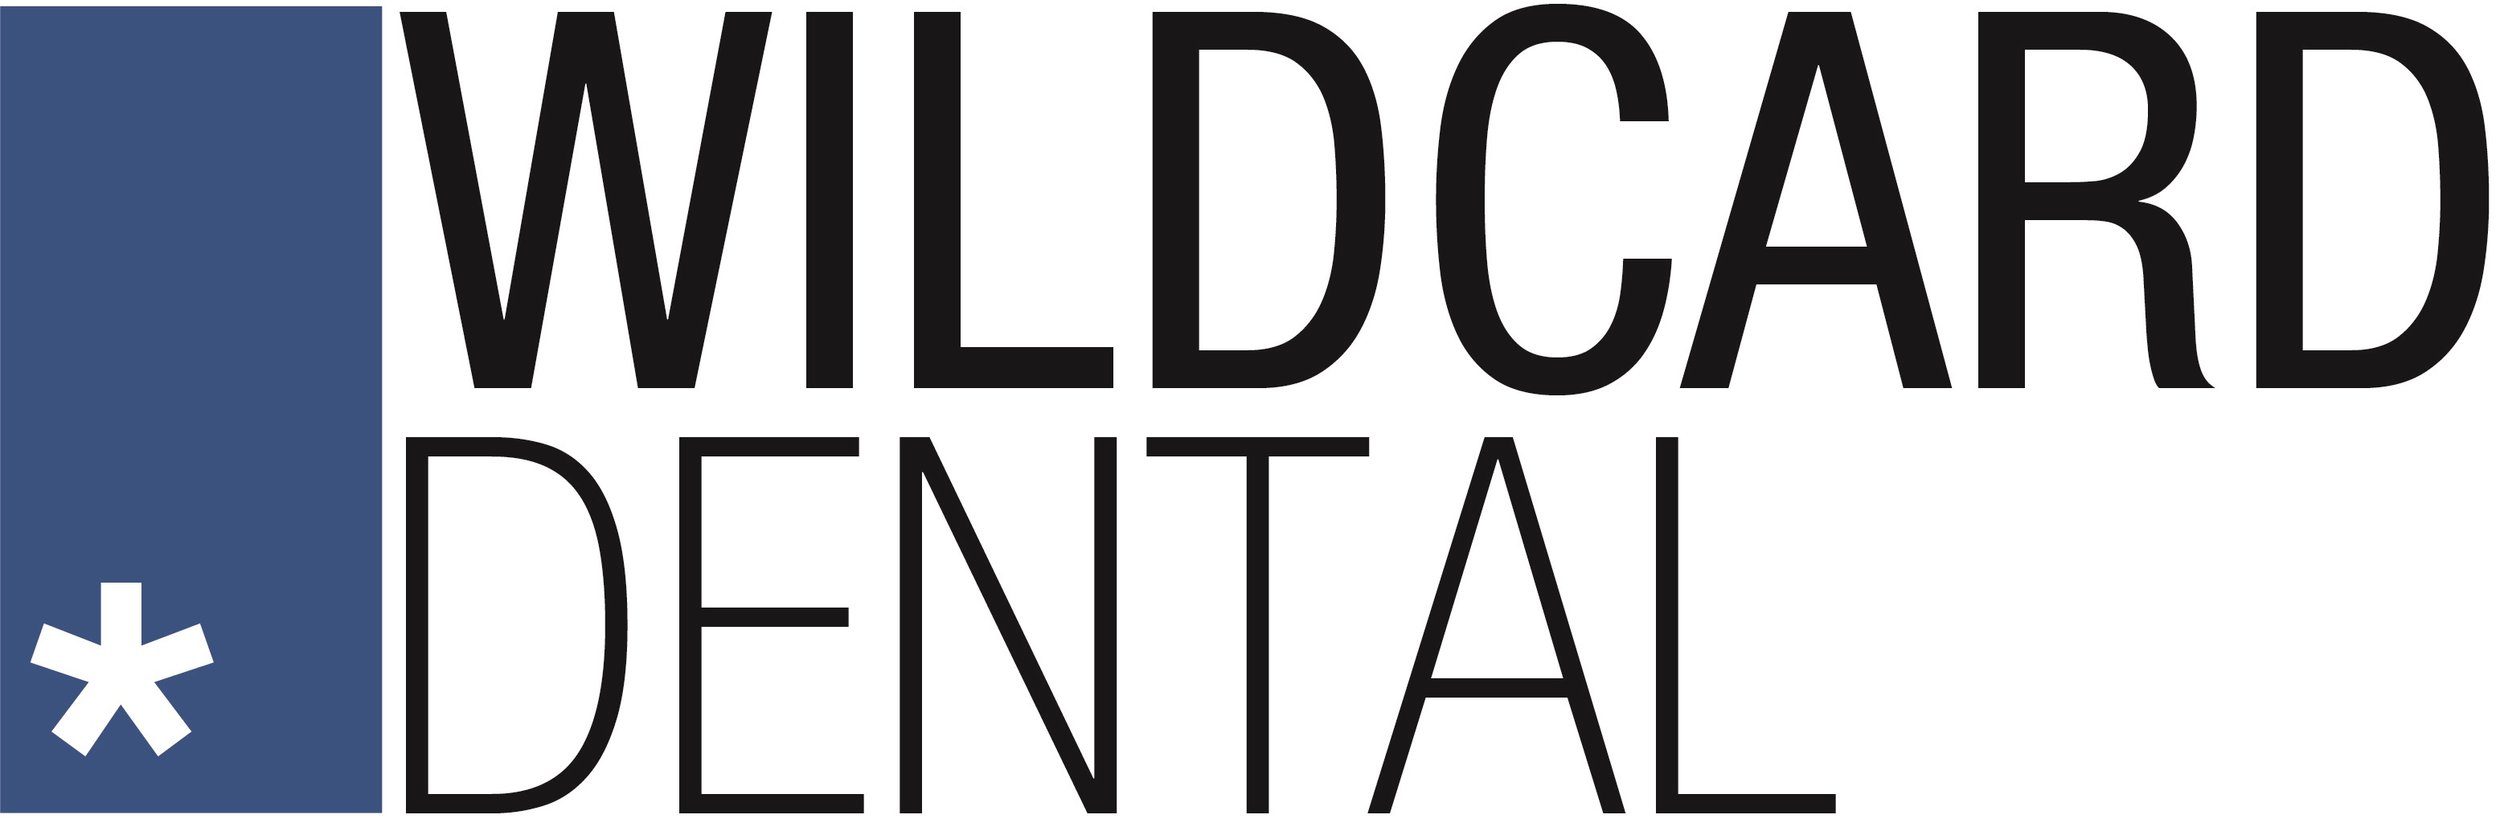 Wildcard Dental - Technology Support